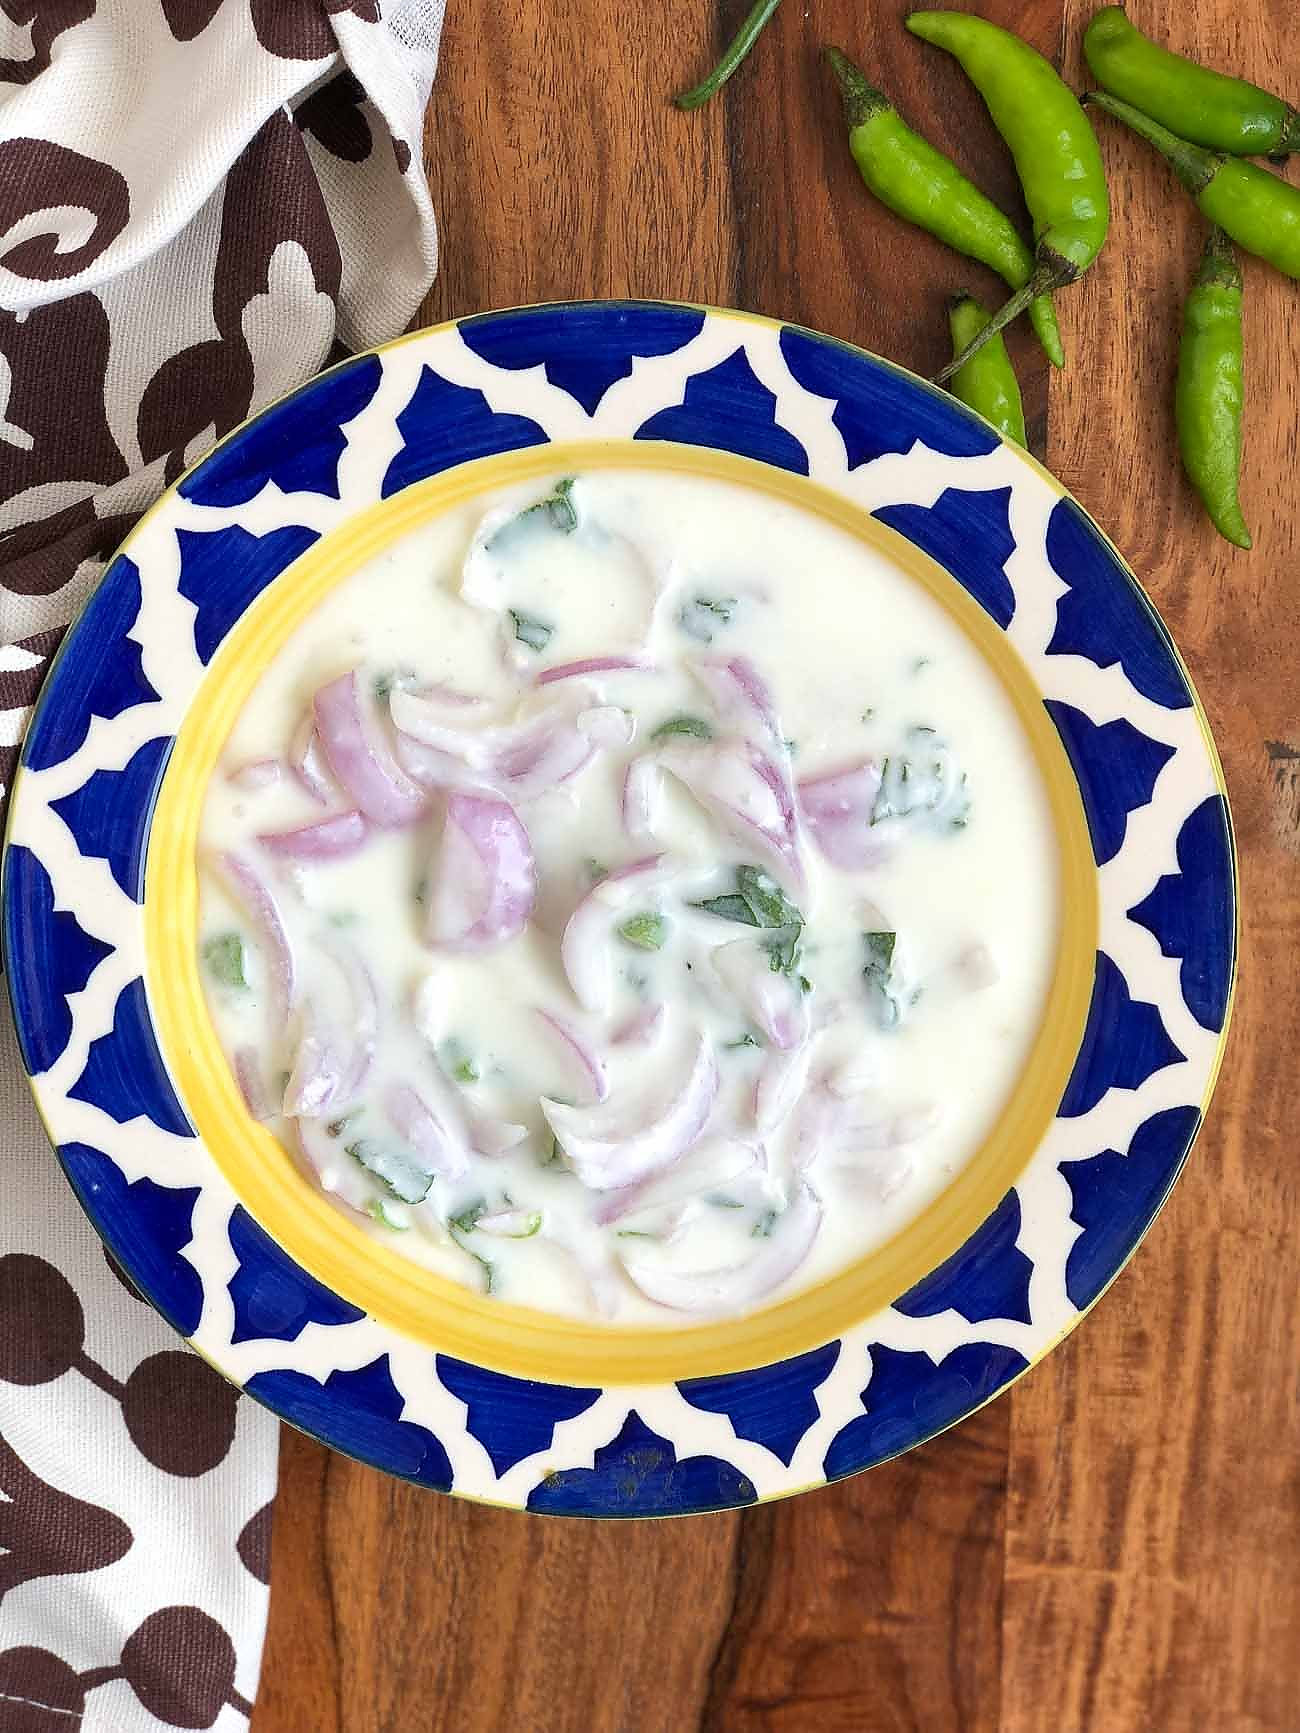 प्याज का रायता रेसिपी - Onion Raita Recipe